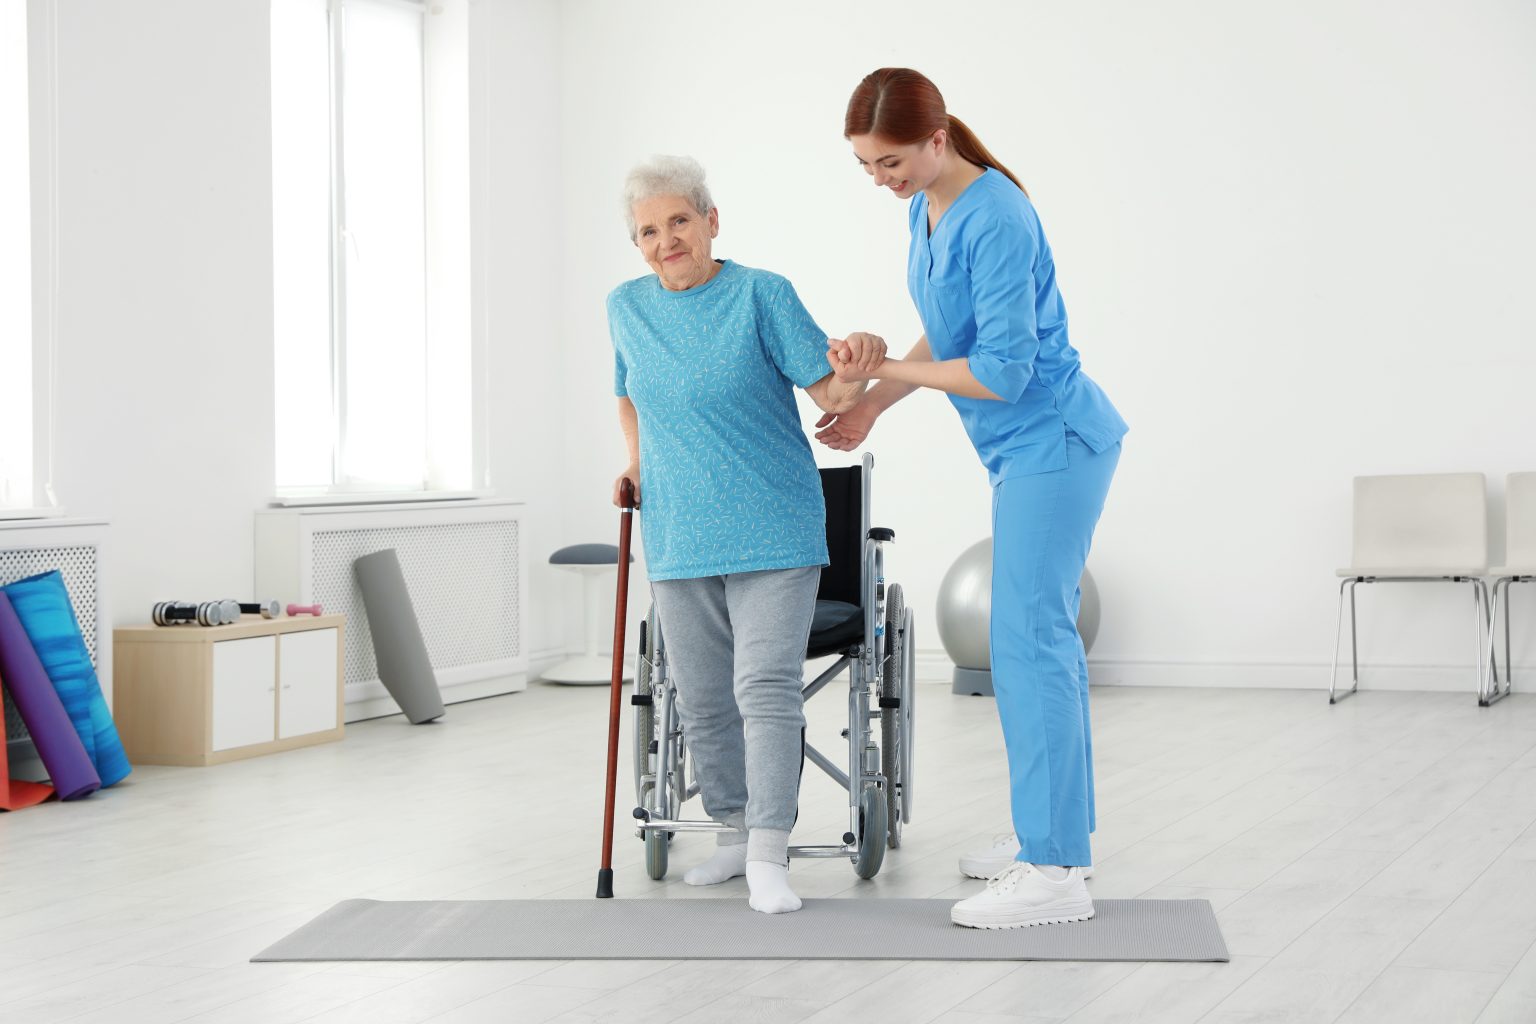 Để tập đứng và giữ thăng bằng, người nhà cần hướng dẫn cho bệnh nhân